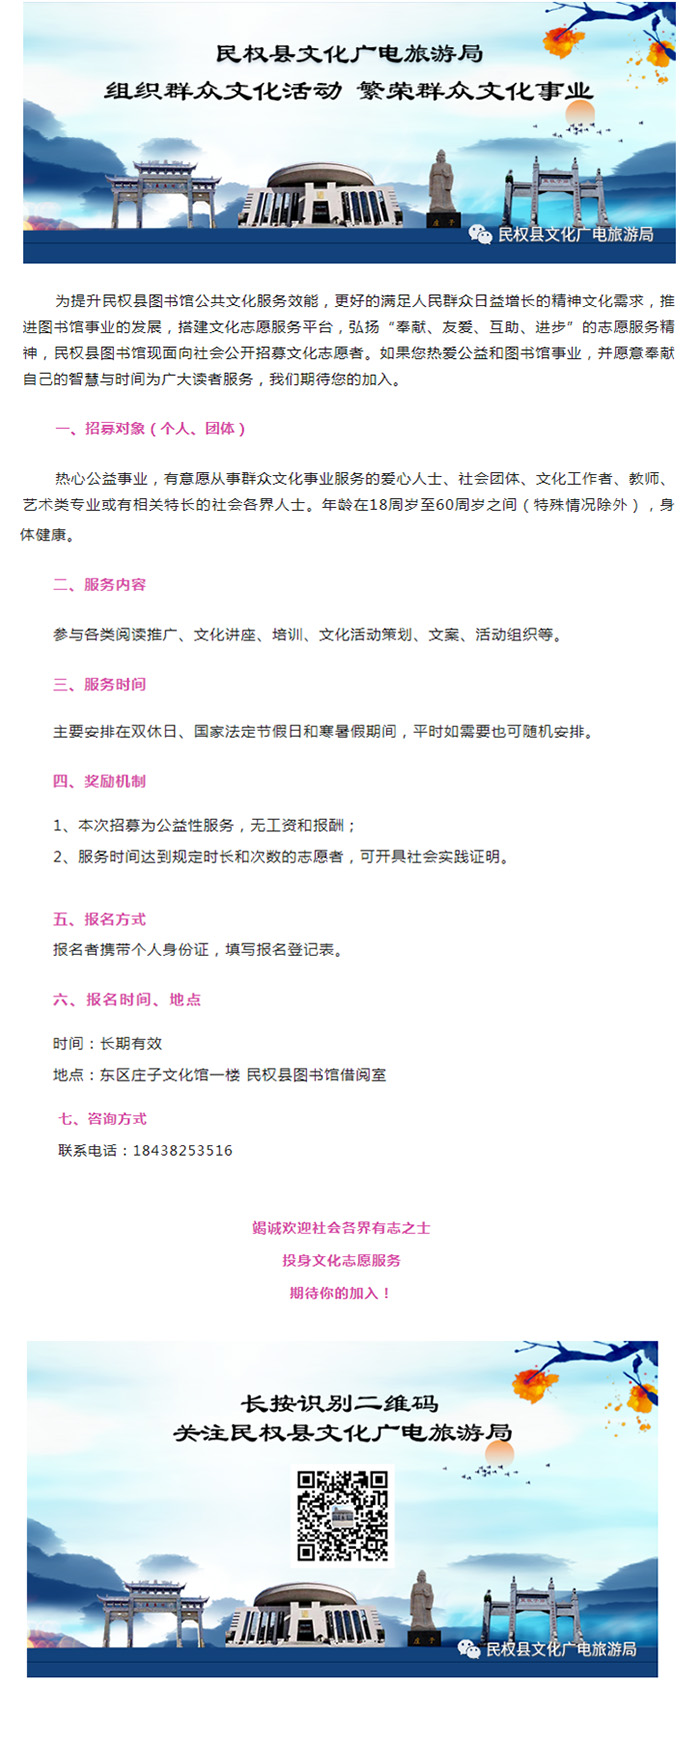 民权县图书馆公开招募文化志愿者